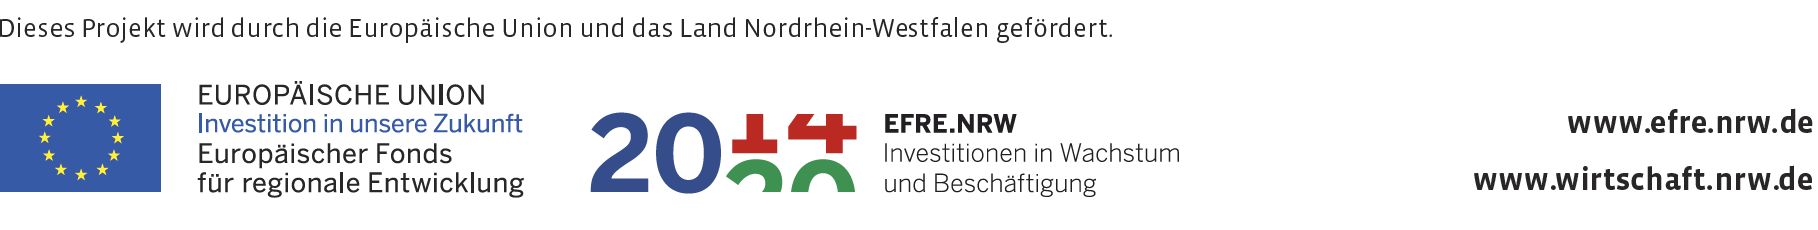 Dieses Projekt wird durch die Europäische Union und das Land Nordrhein-Westfalen gefördert. Fördergeber: EU, EFRE.NRW, www.efre.nrw.dem www.wirtschaft.nrw.de